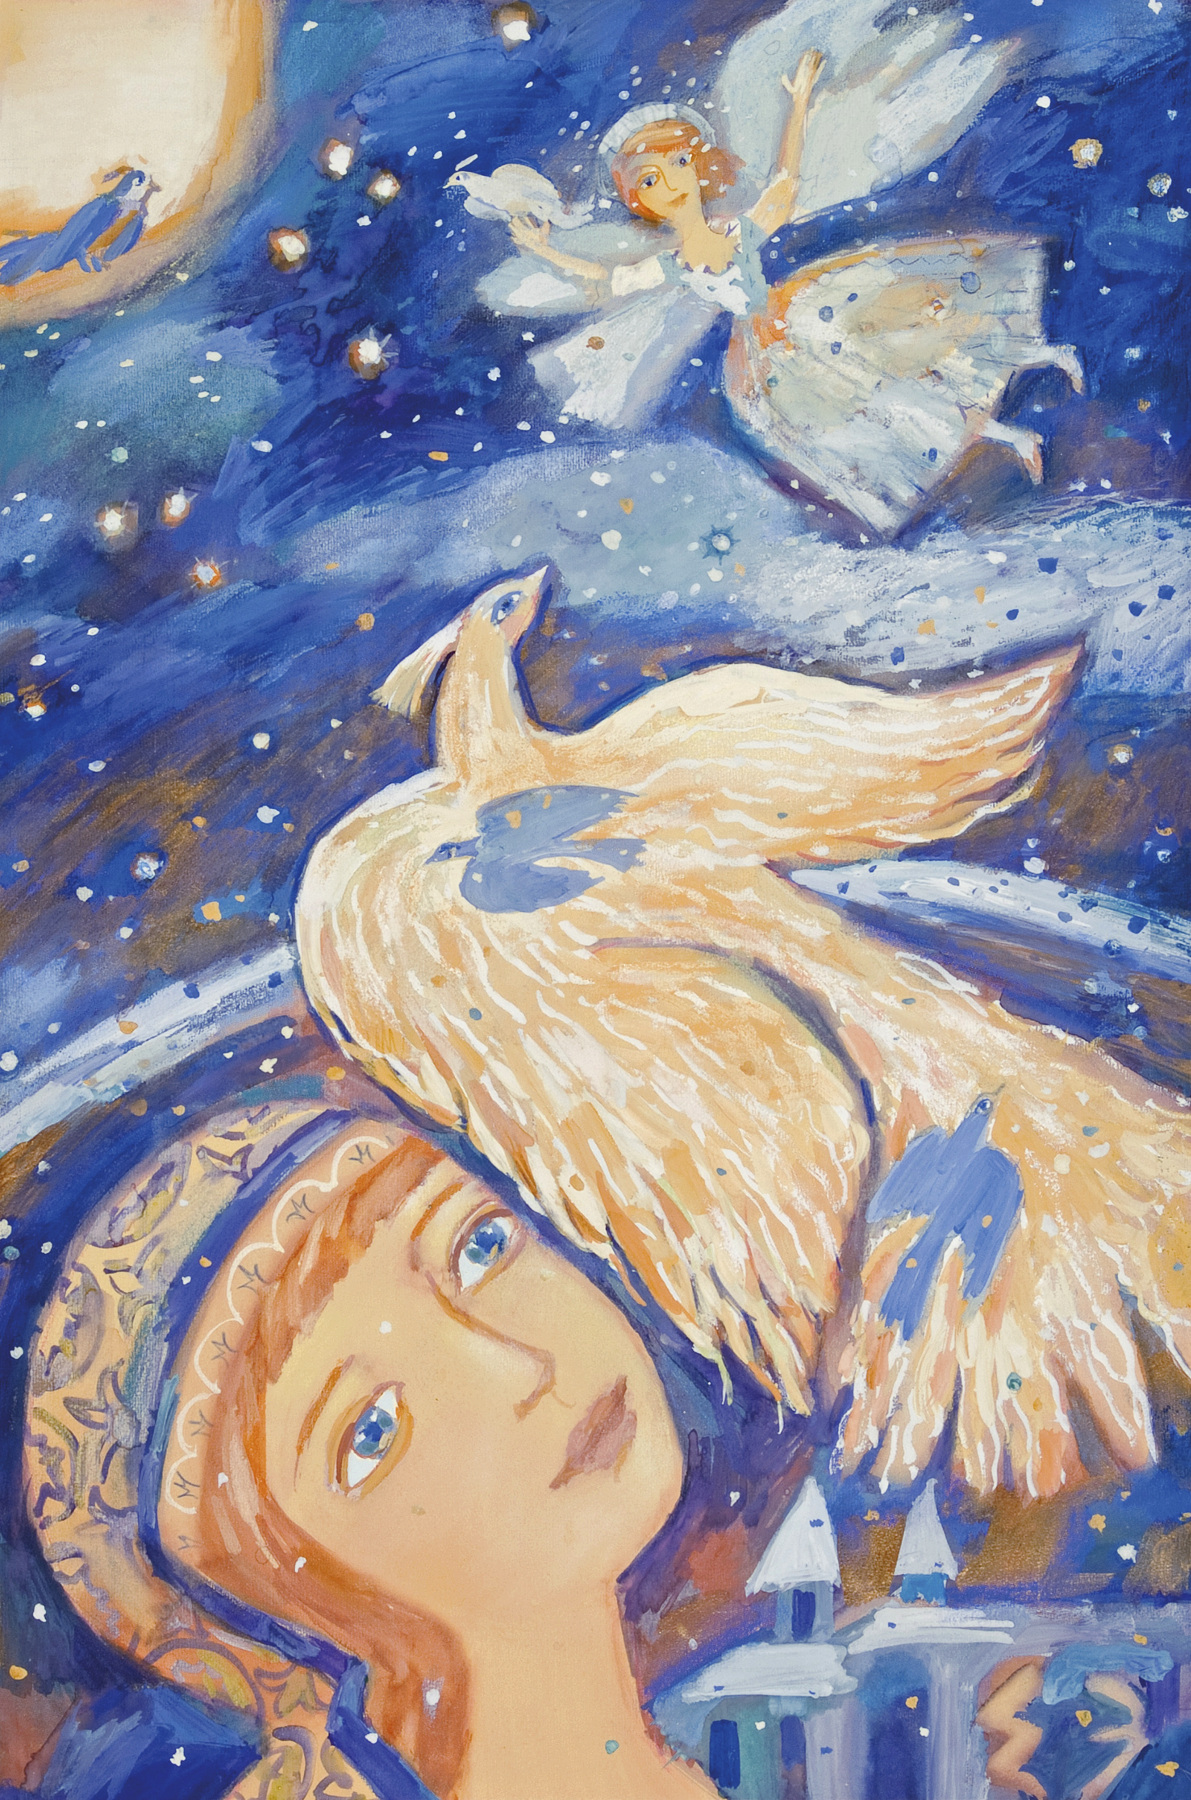    Мир сказки Елены Зарубовой | Сон с ангелом и птицей